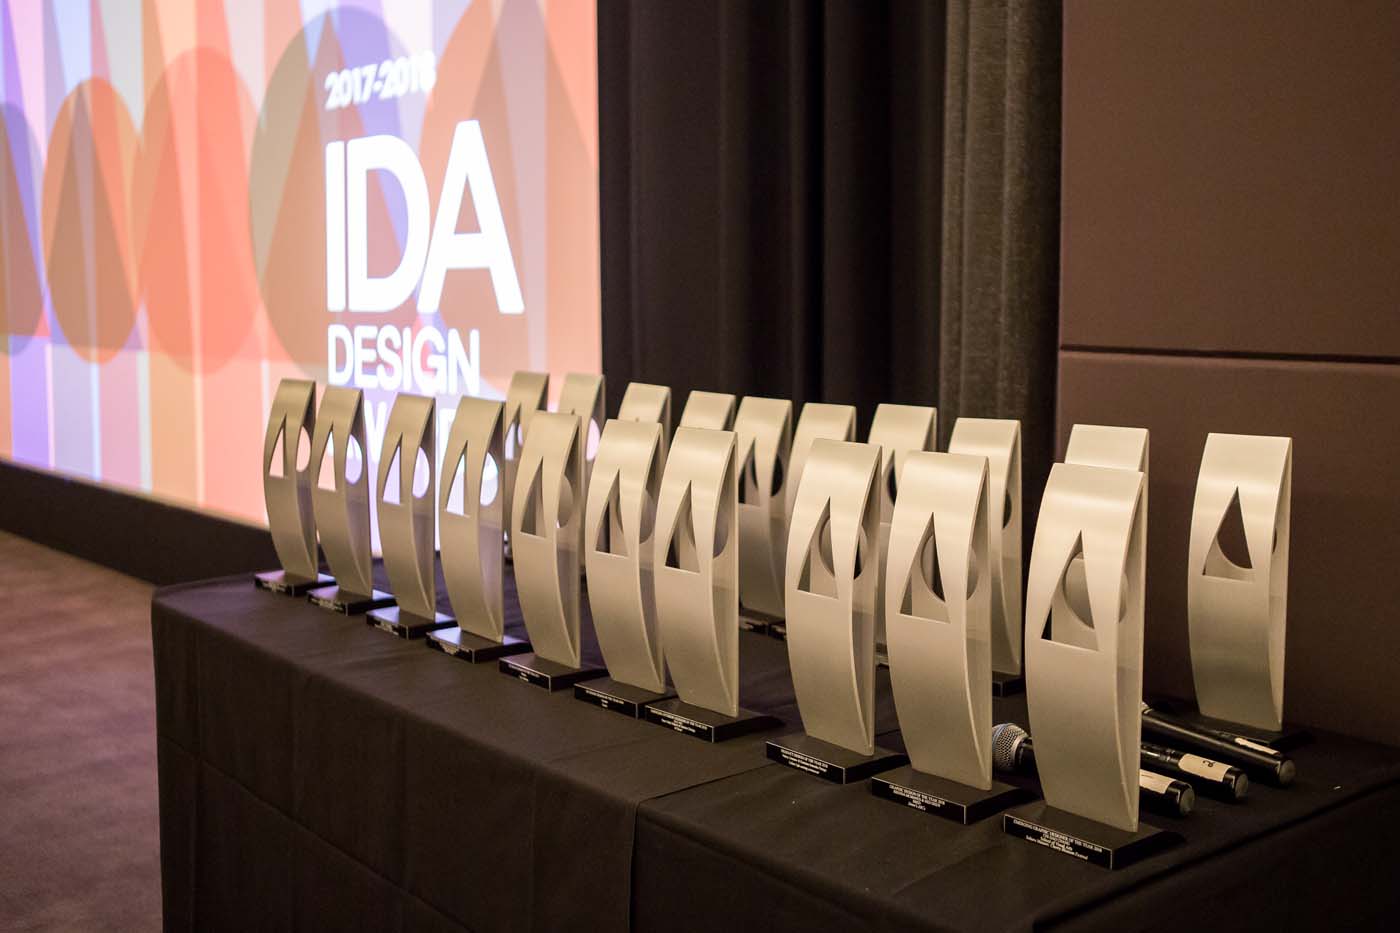 IDA Winner's Evening Award